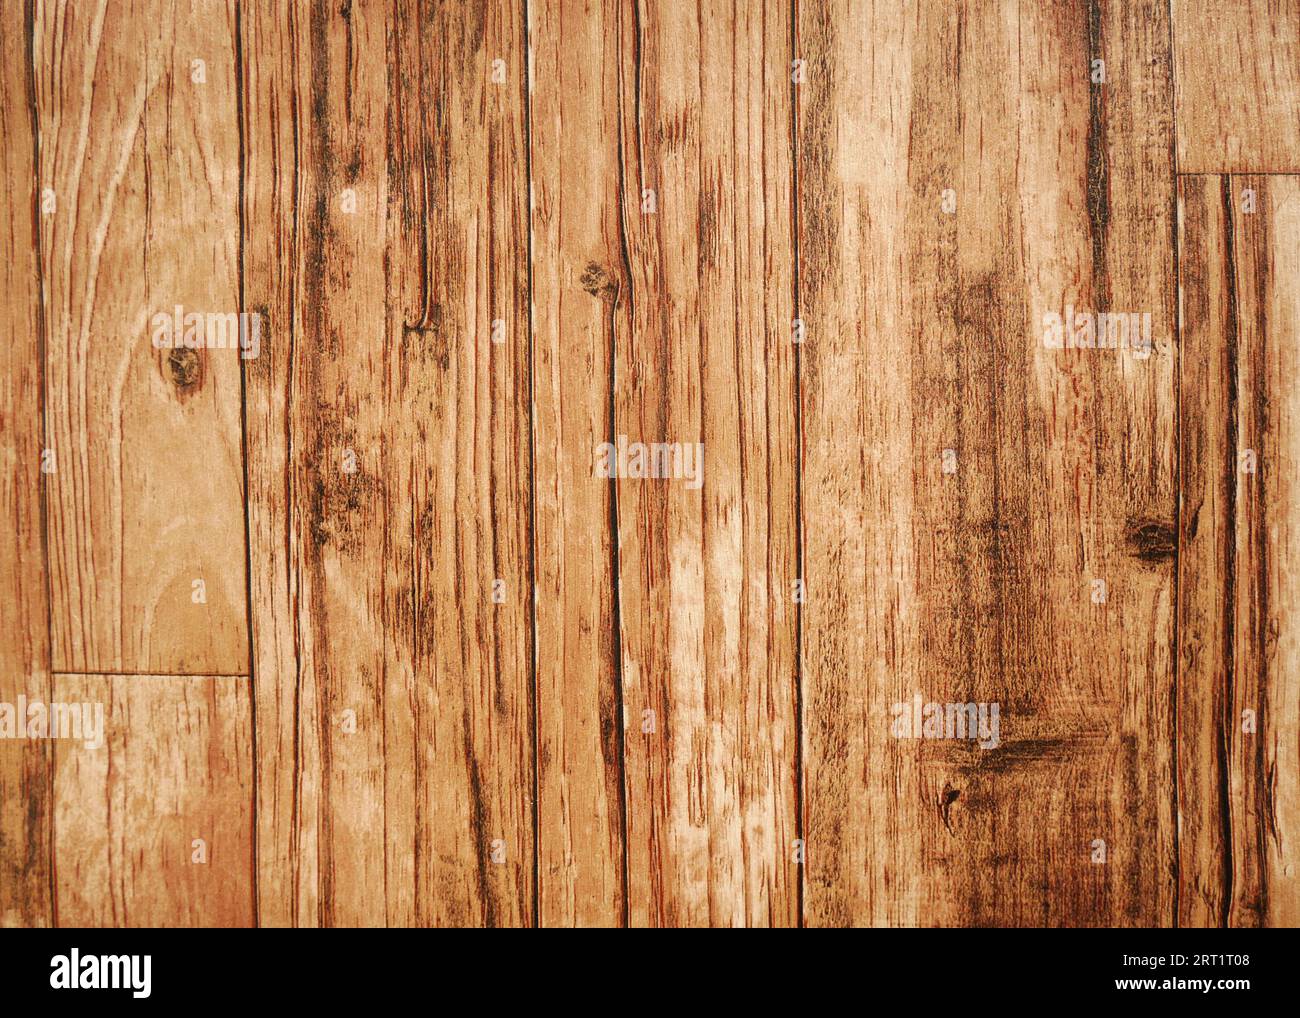 Sfondo con struttura in legno marrone. I pannelli in legno hanno un bel motivo scuro, la consistenza dei pavimenti in legno duro. Foto Stock